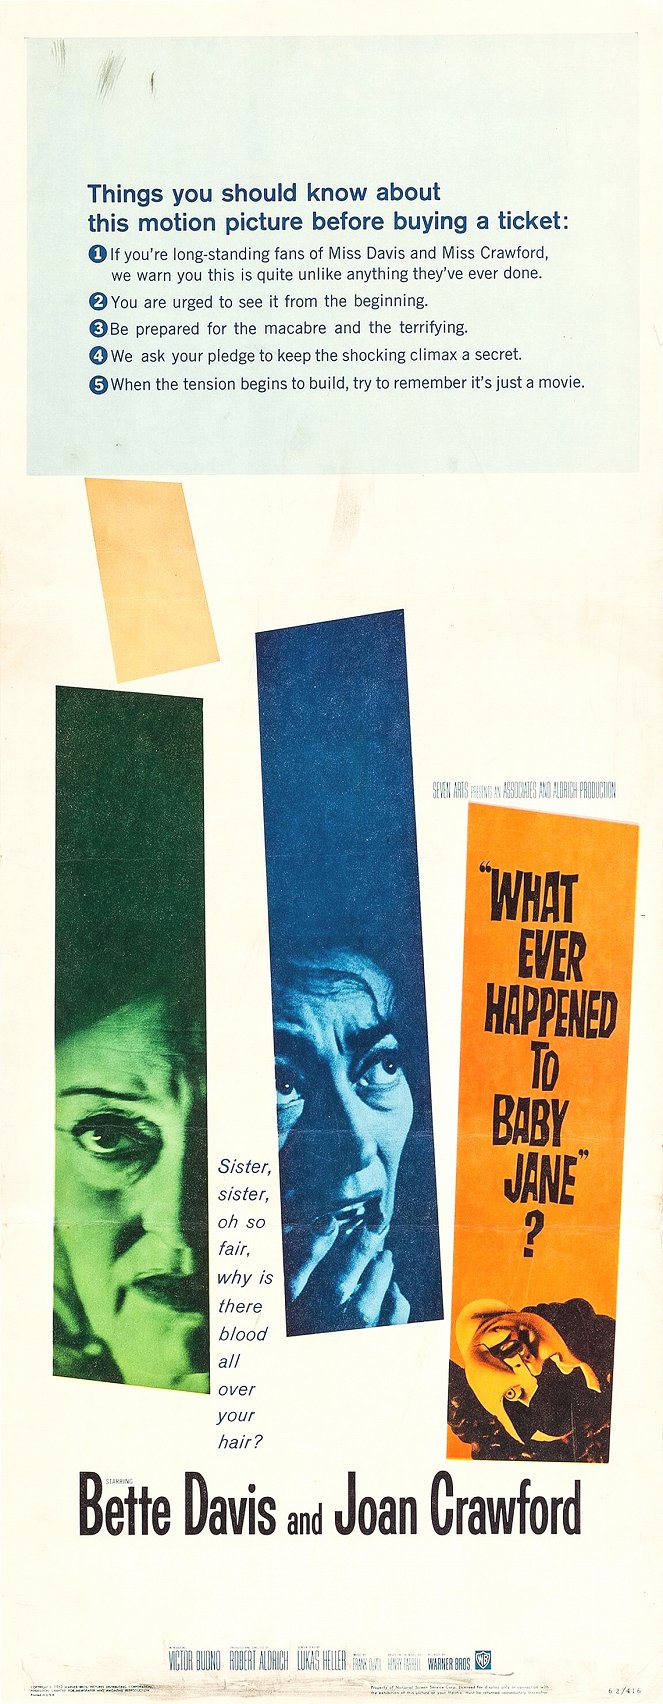 Co se vlastně stalo s Baby Jane? - Plagáty